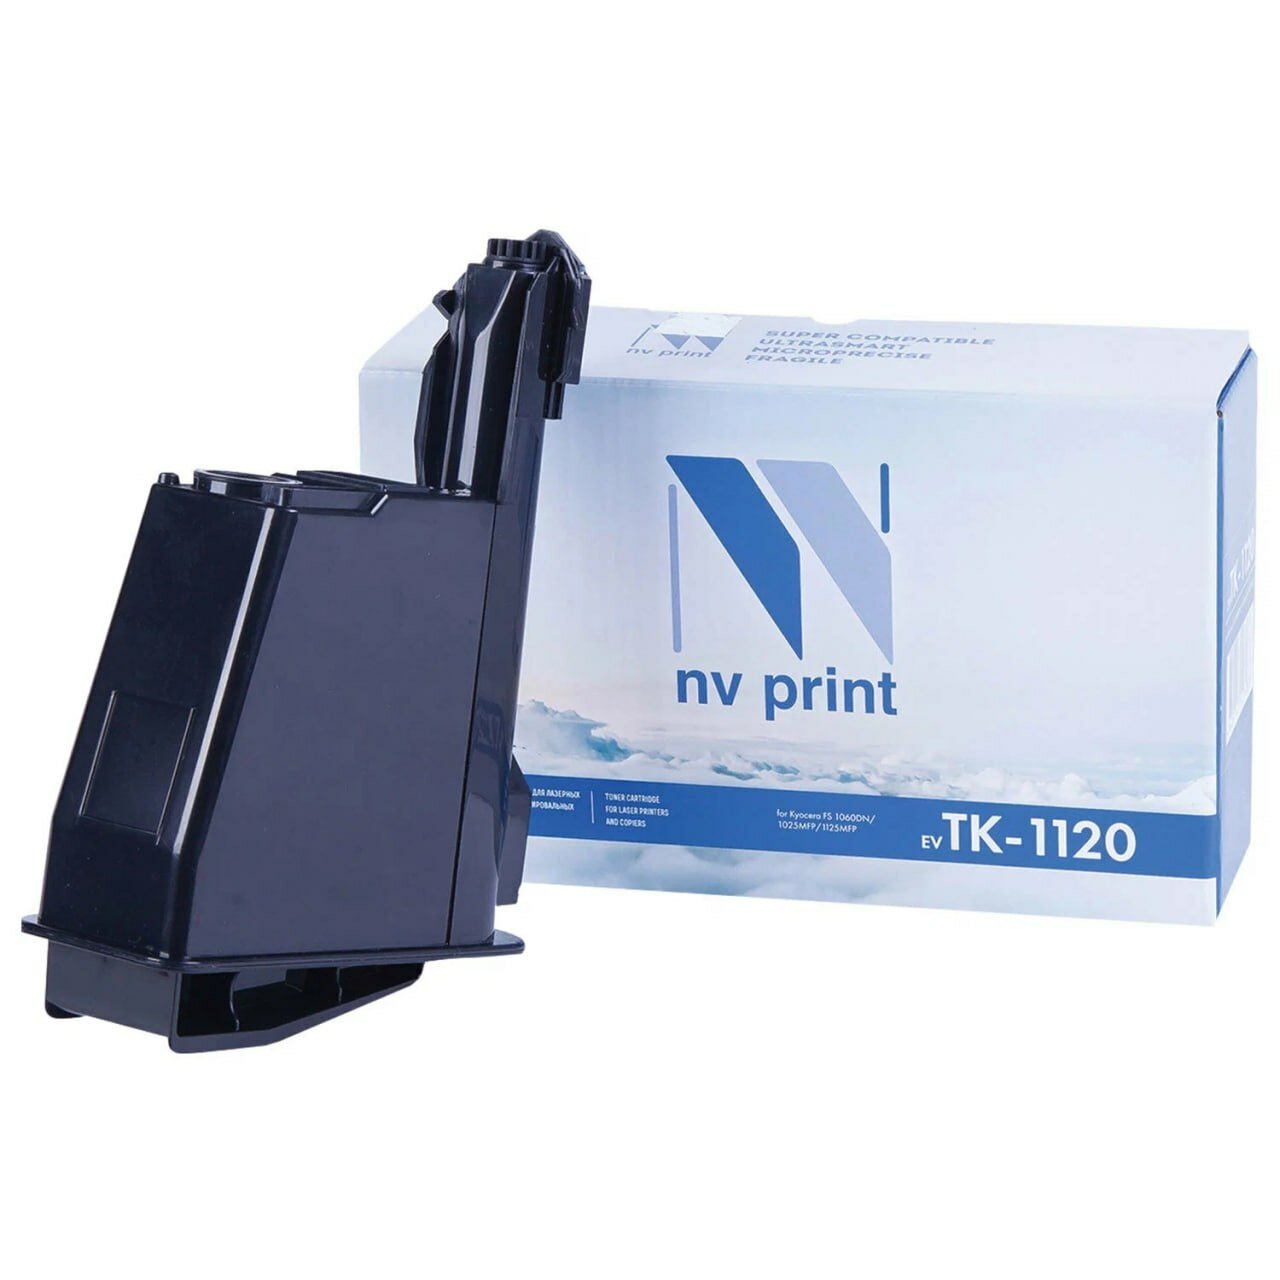 Картридж NV Print TK-1120 совместимый для Koyacera FS1060DN/1025MFP/1125MFP (3000 стр.)